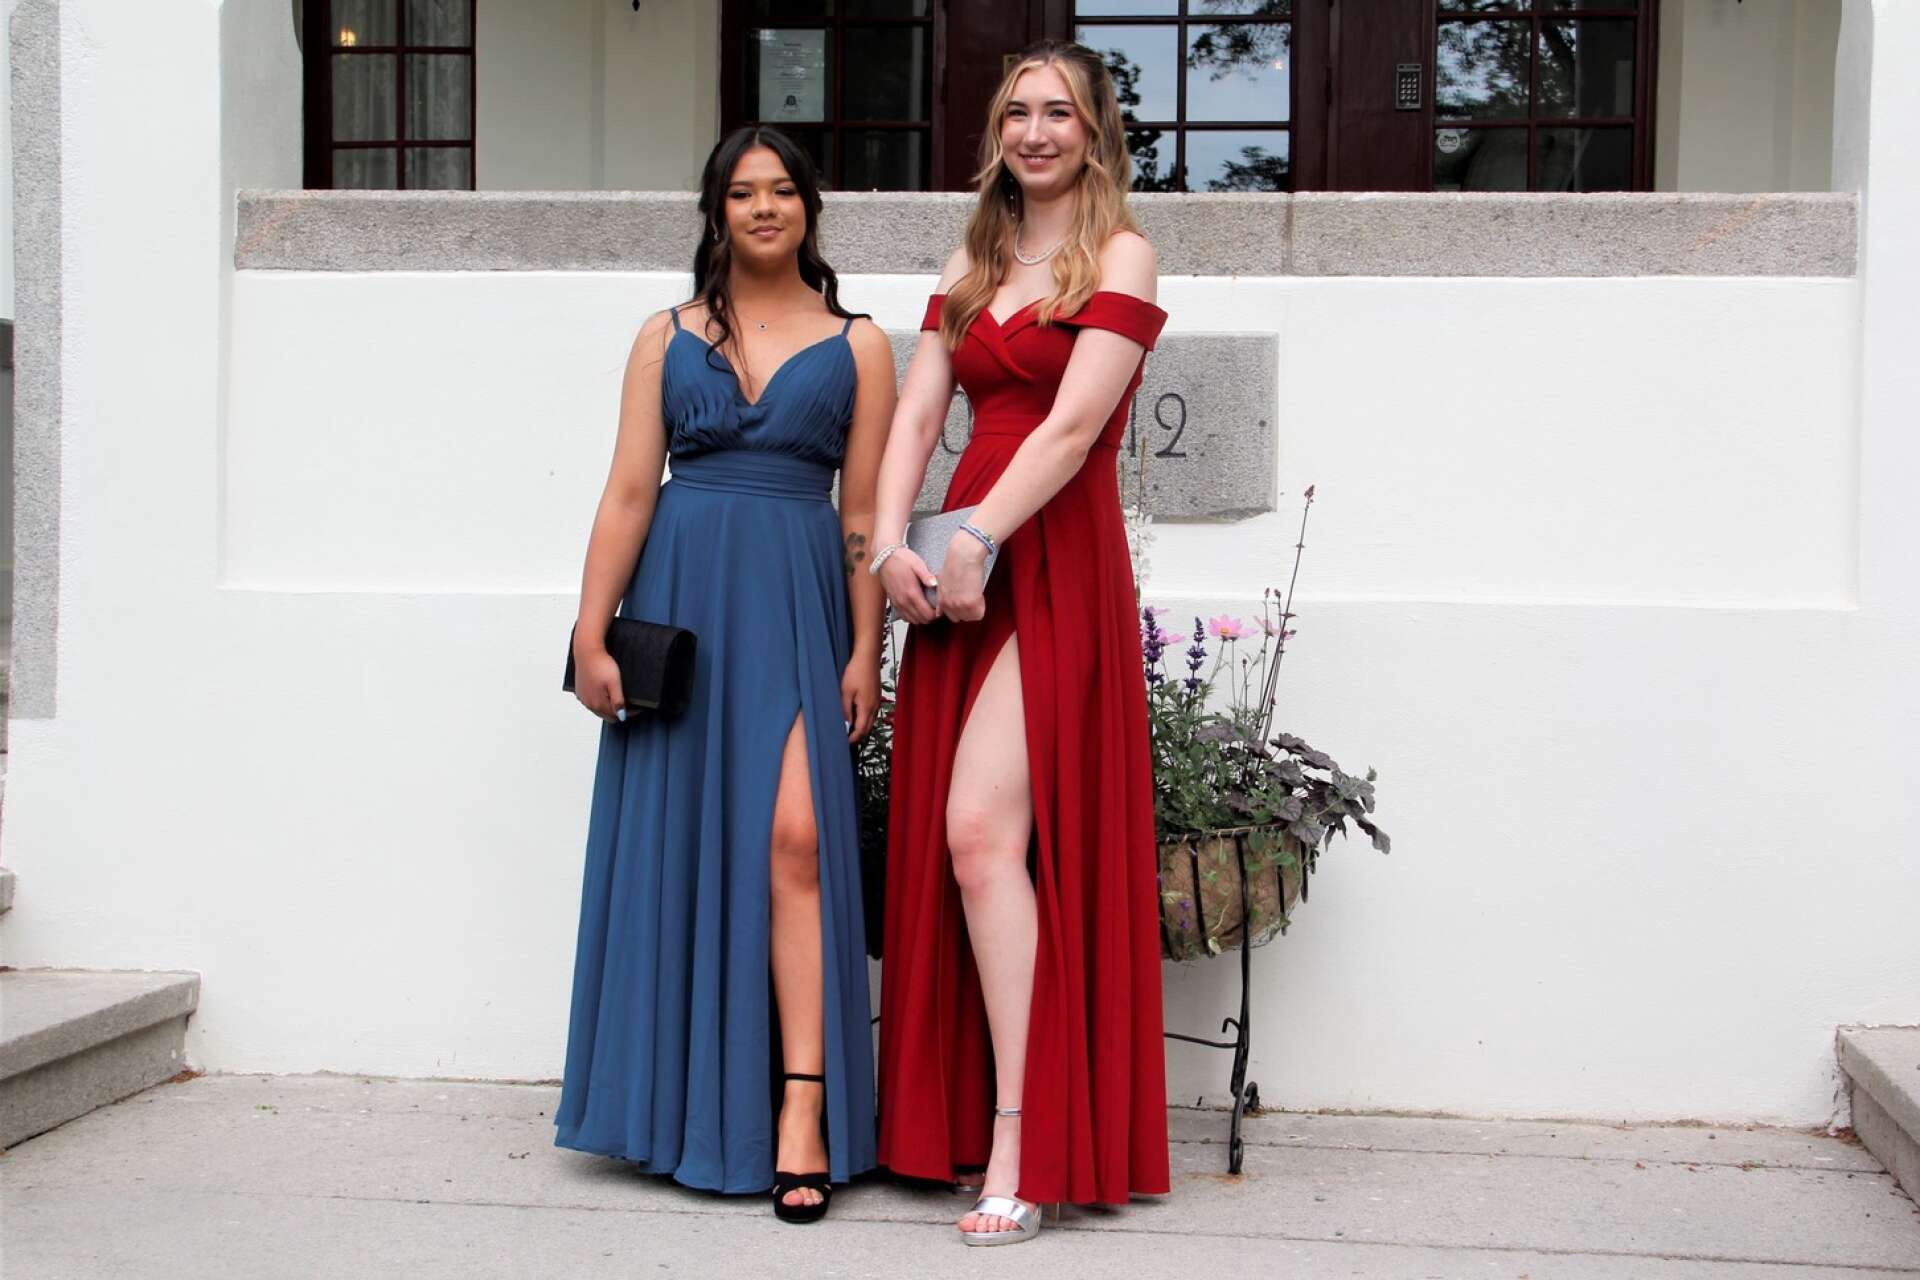 Nicole dela Cruz och Felicia Gunninge poserade på herrgårdstrappan i sina fina klänningar.